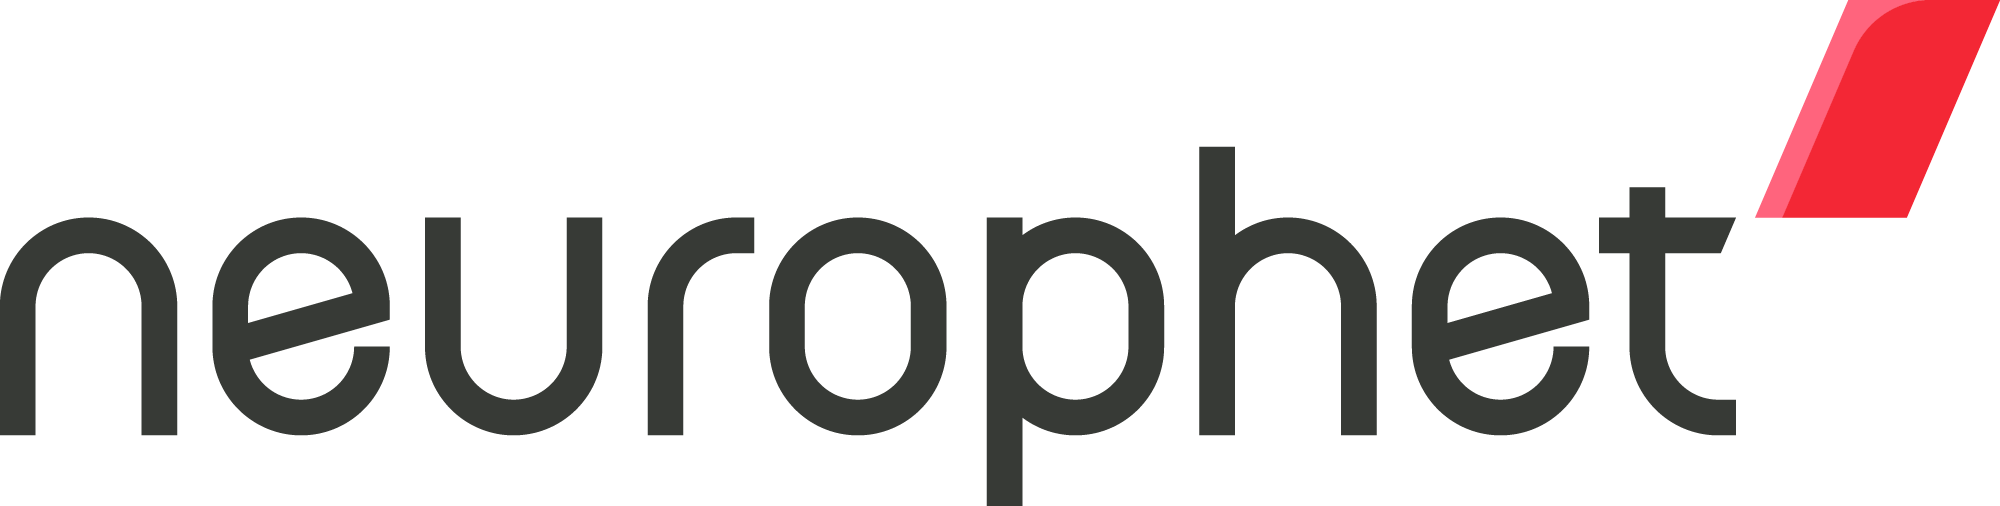 Neurophet logo